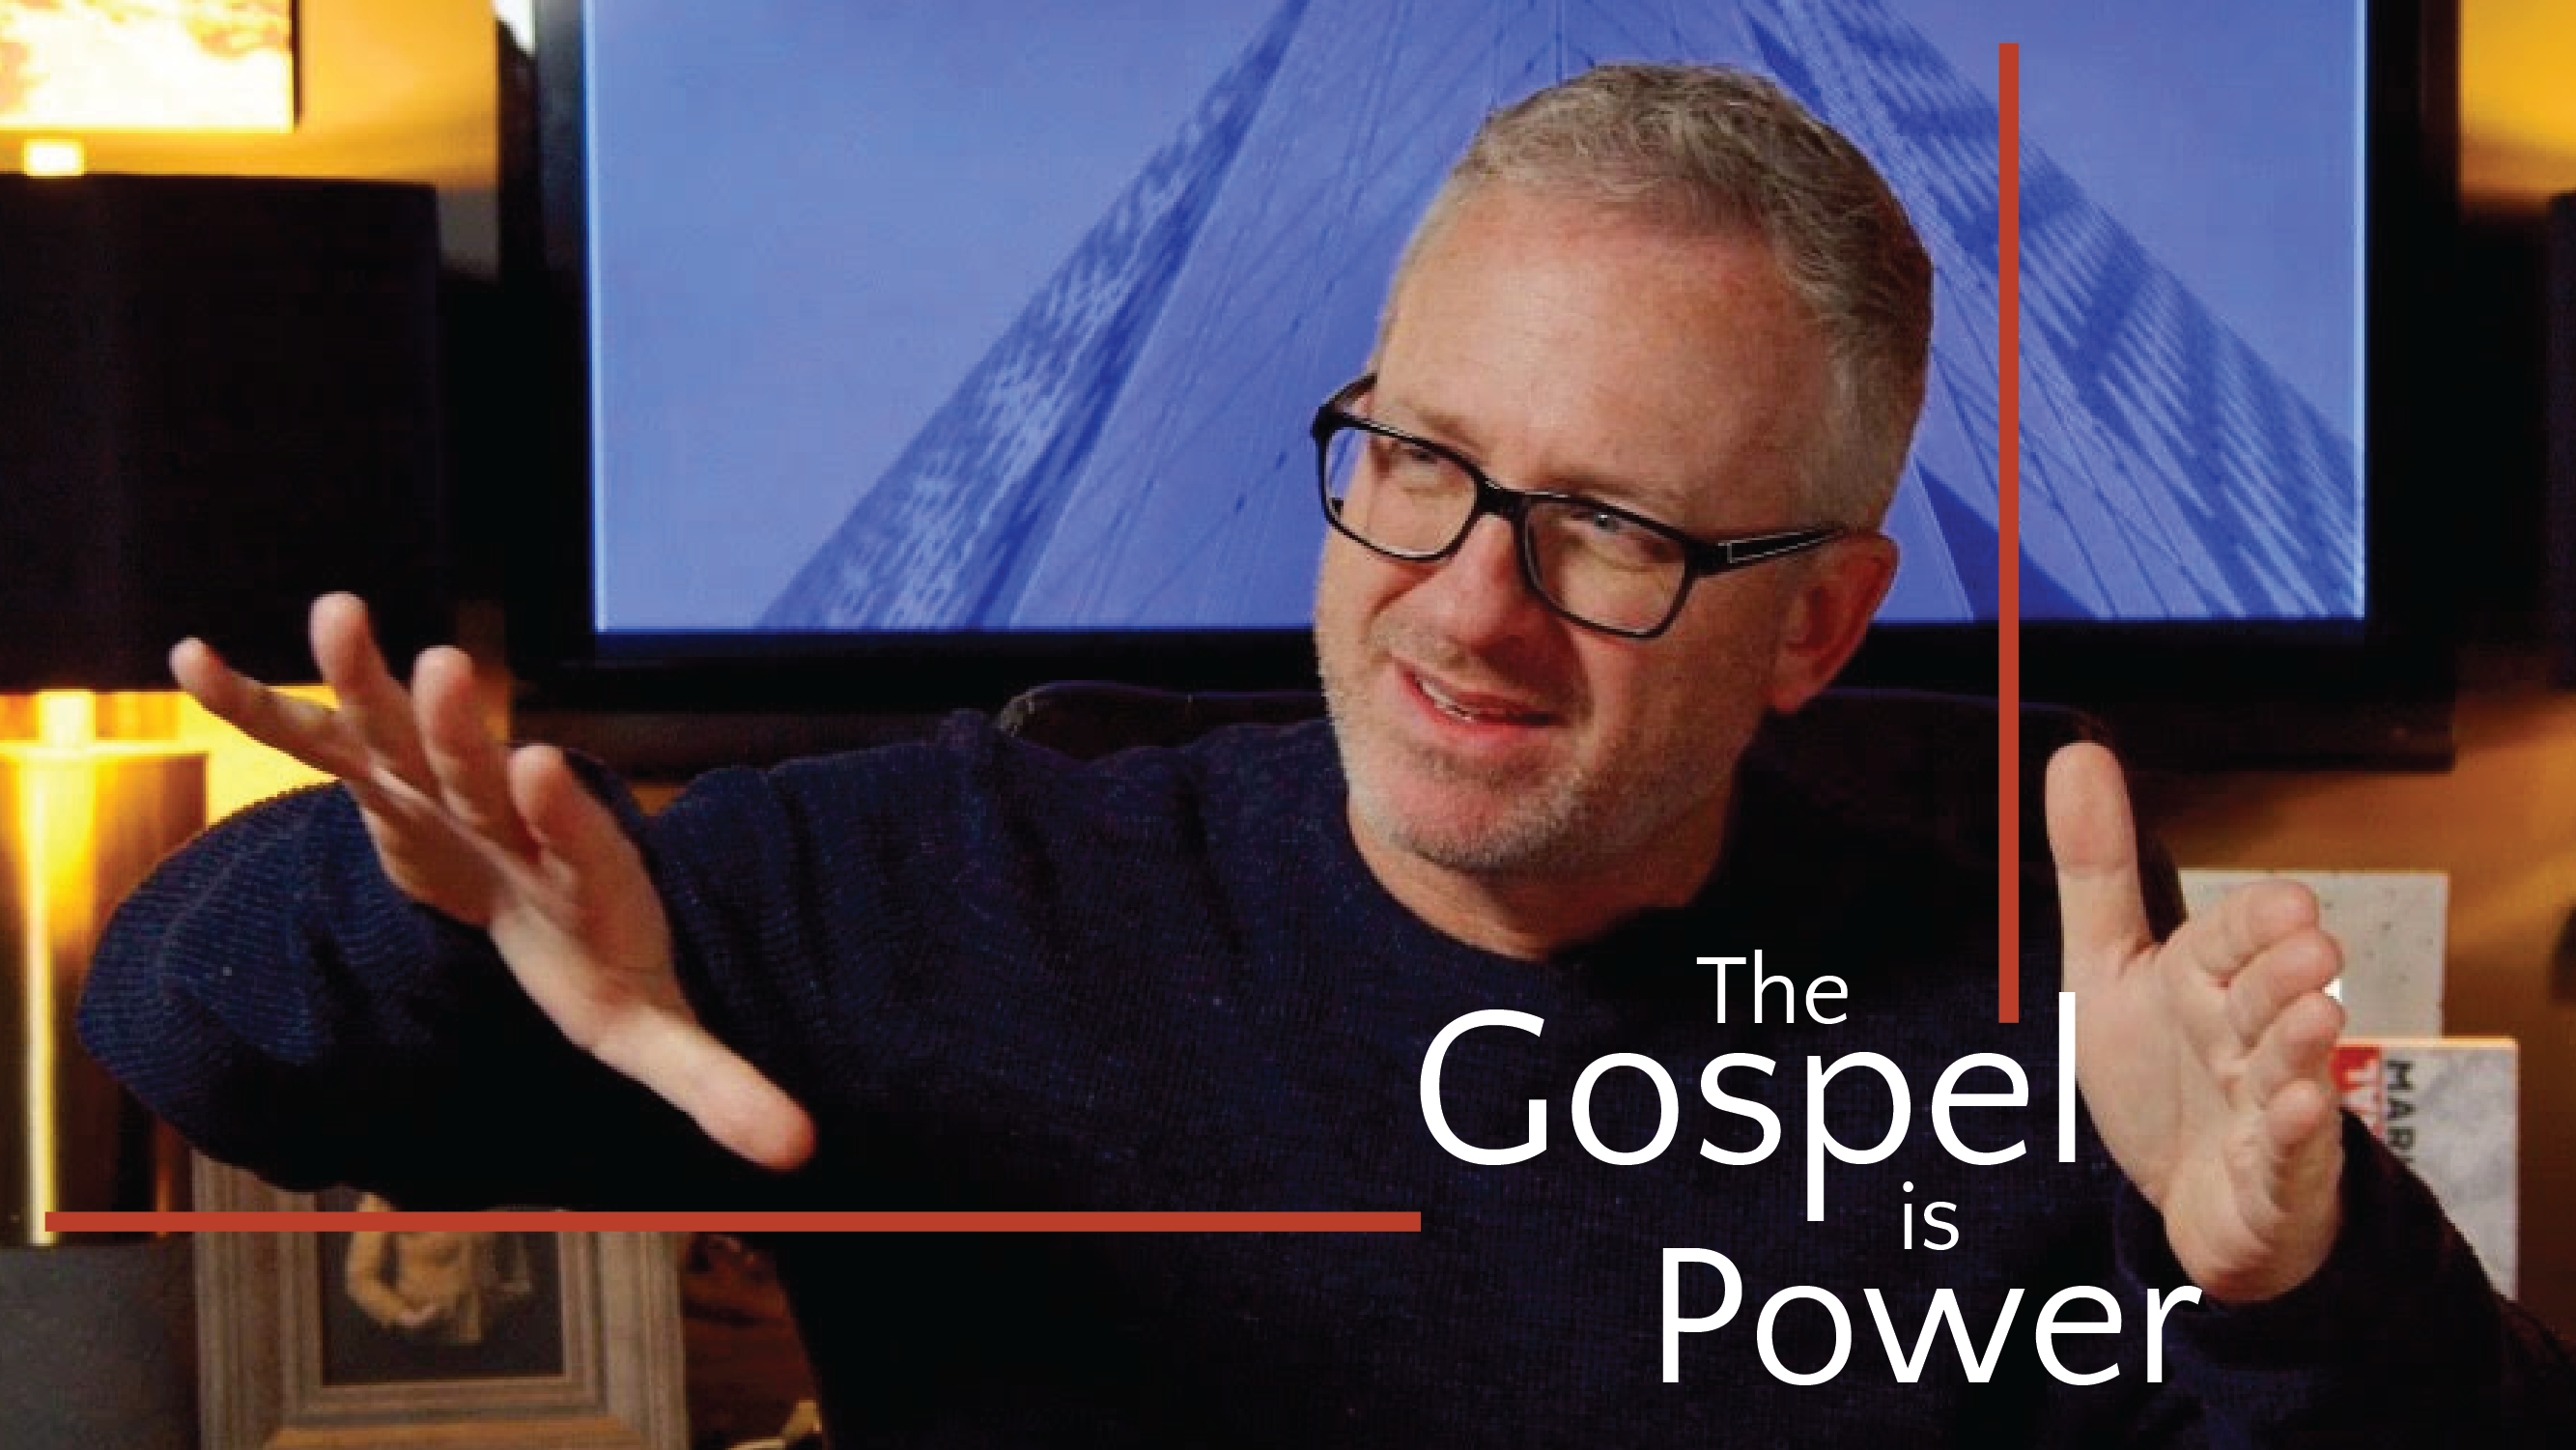 VIDEO: The Gospel is Power